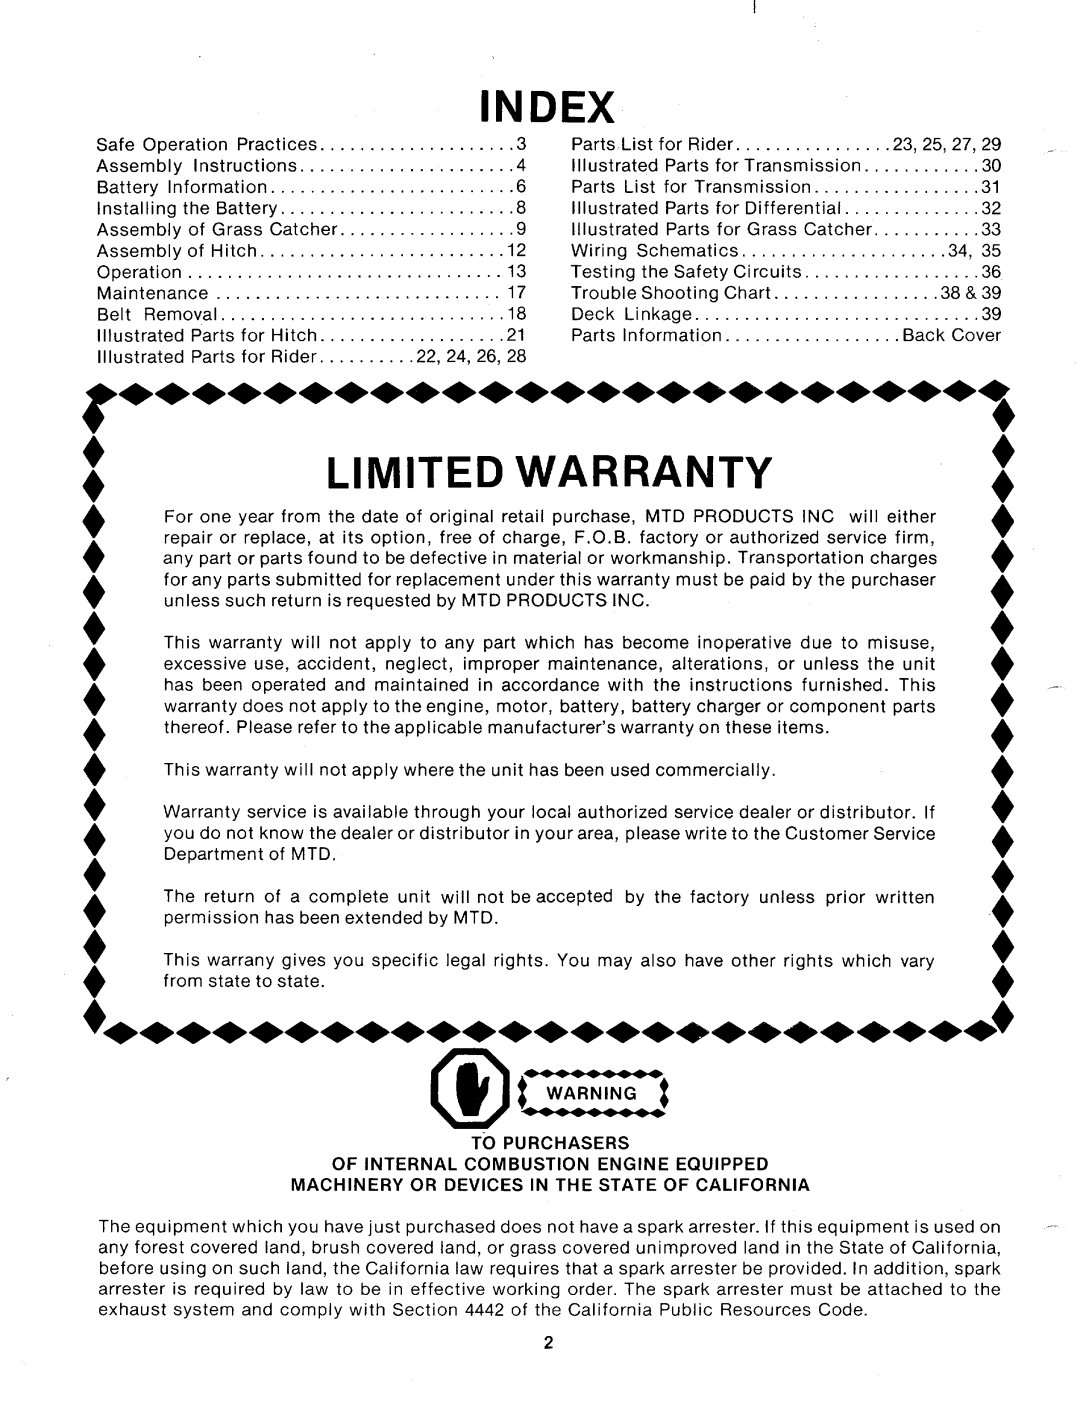 MTD 130-525A, 130-526A manual 